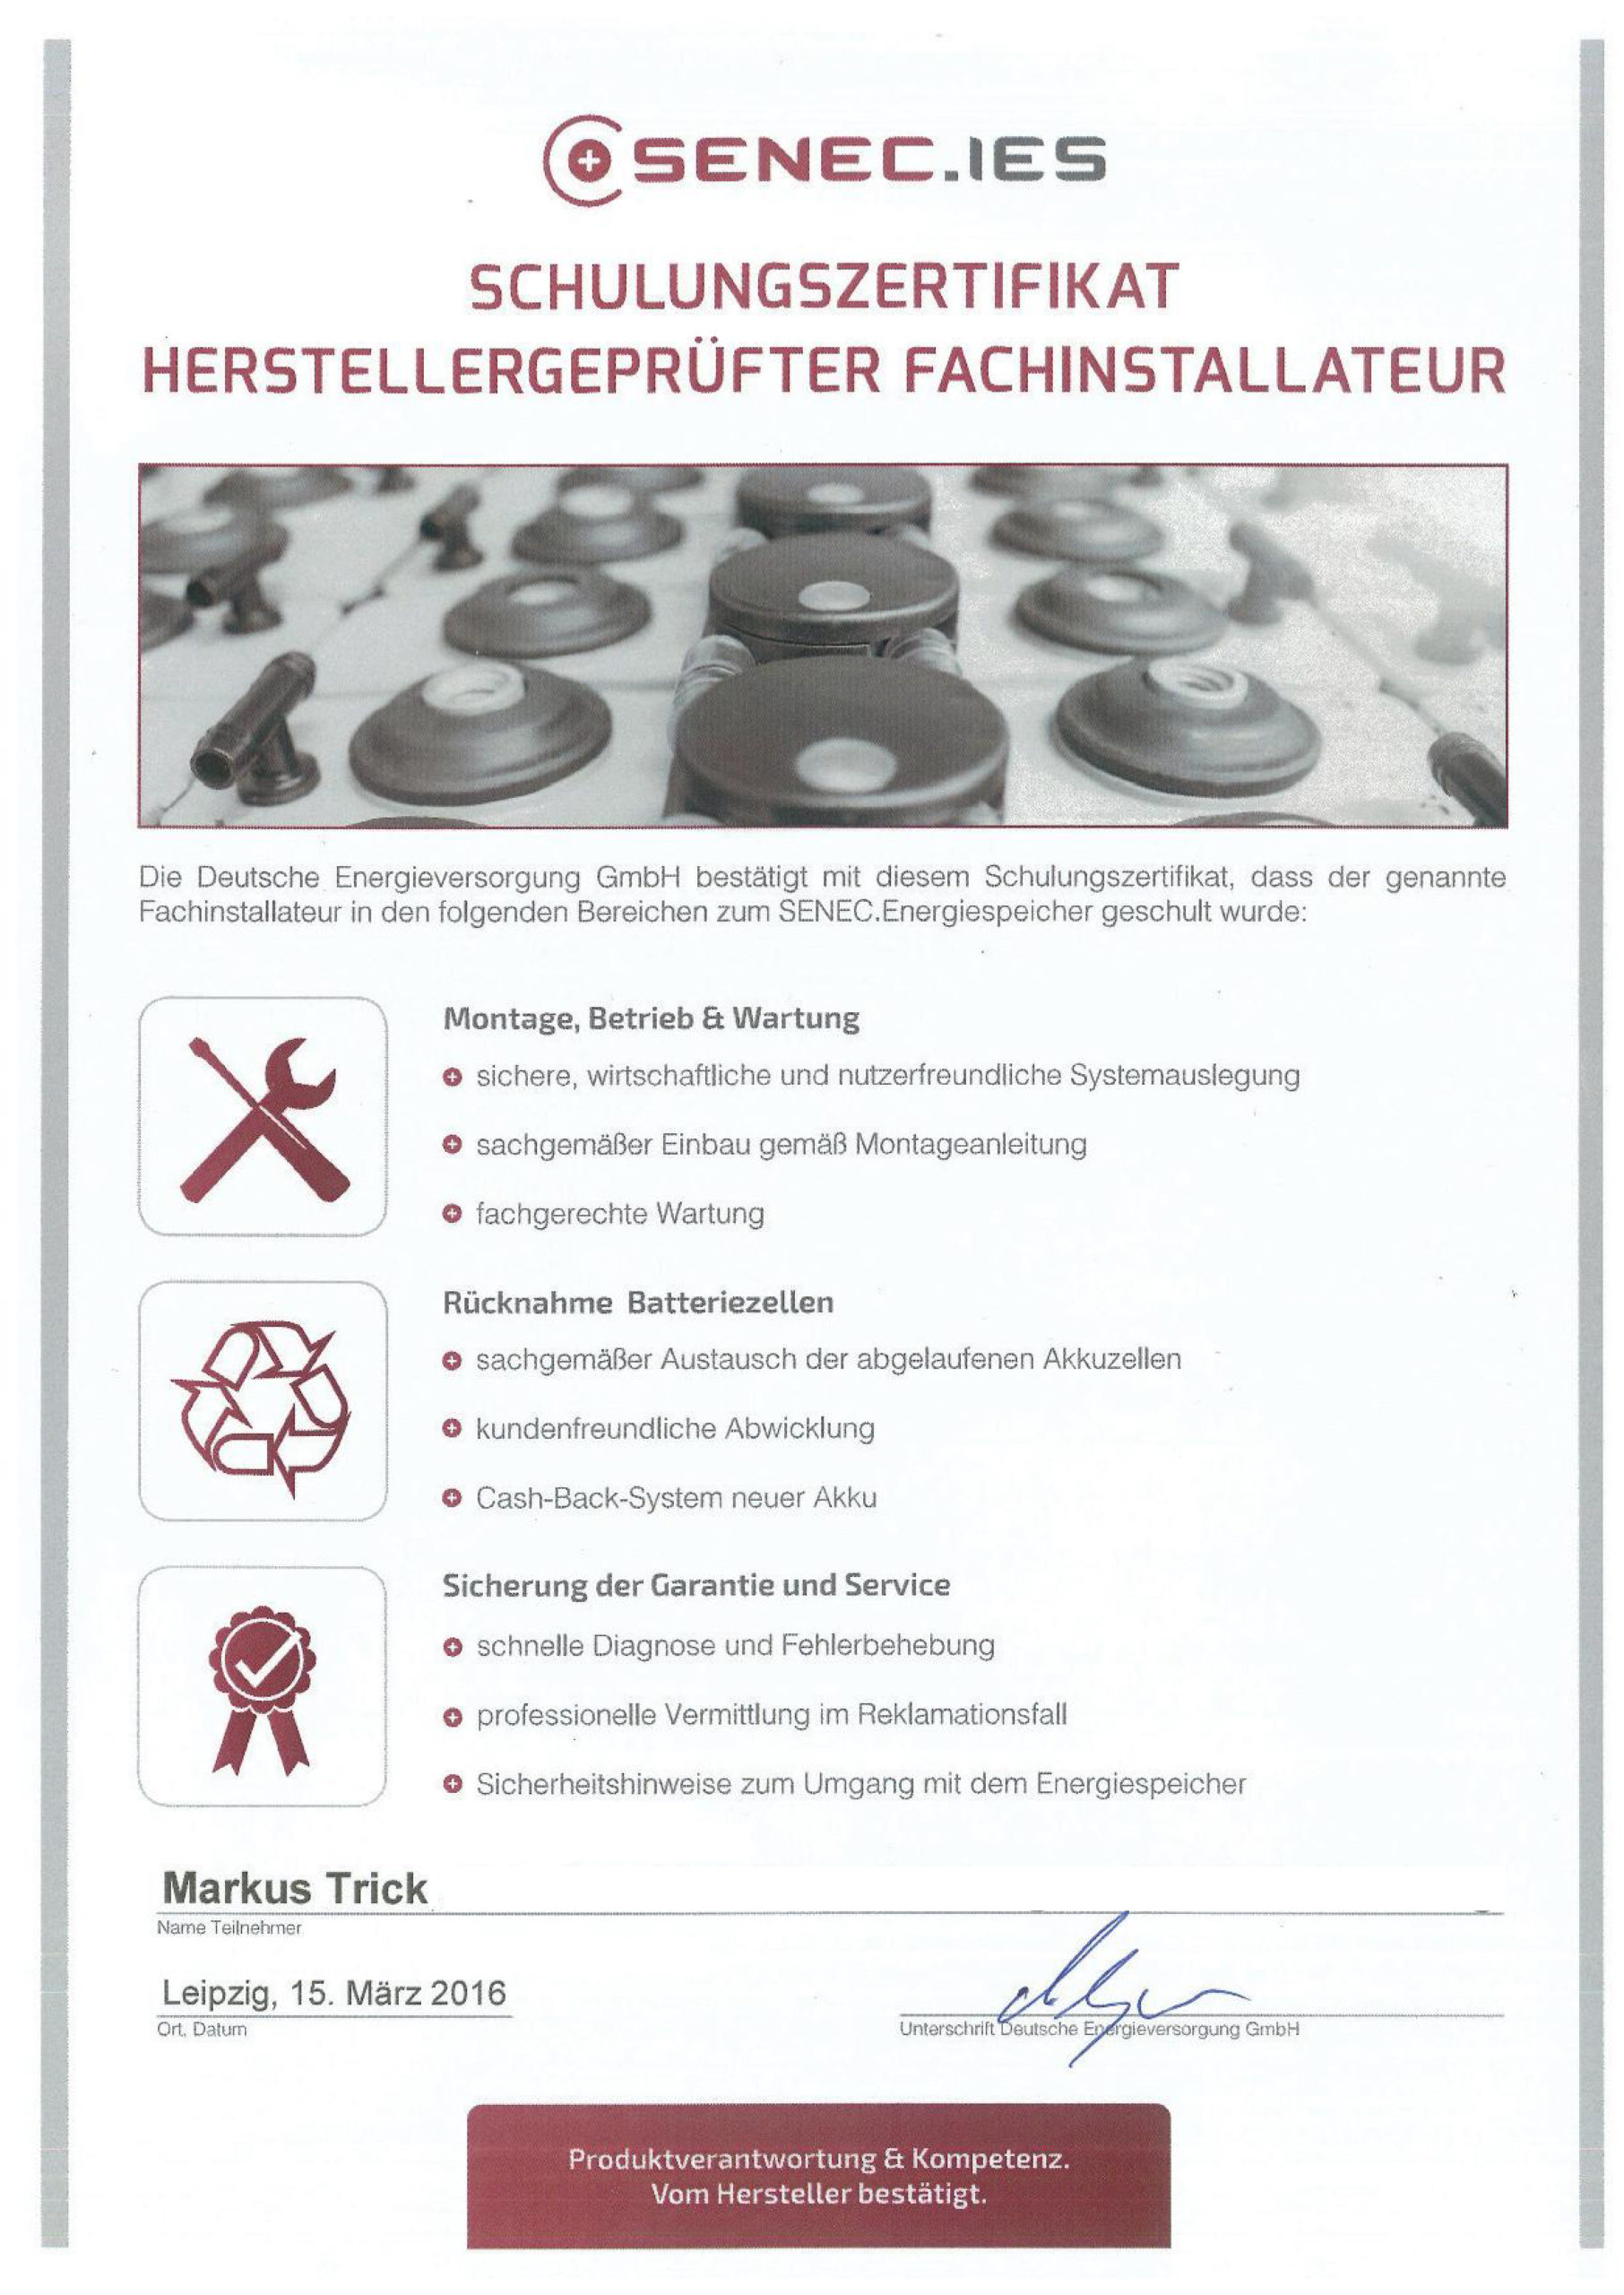 Zertifikat - Herstellergeprüfter Fachinstallateur - SENEC.IES - Markus Trick